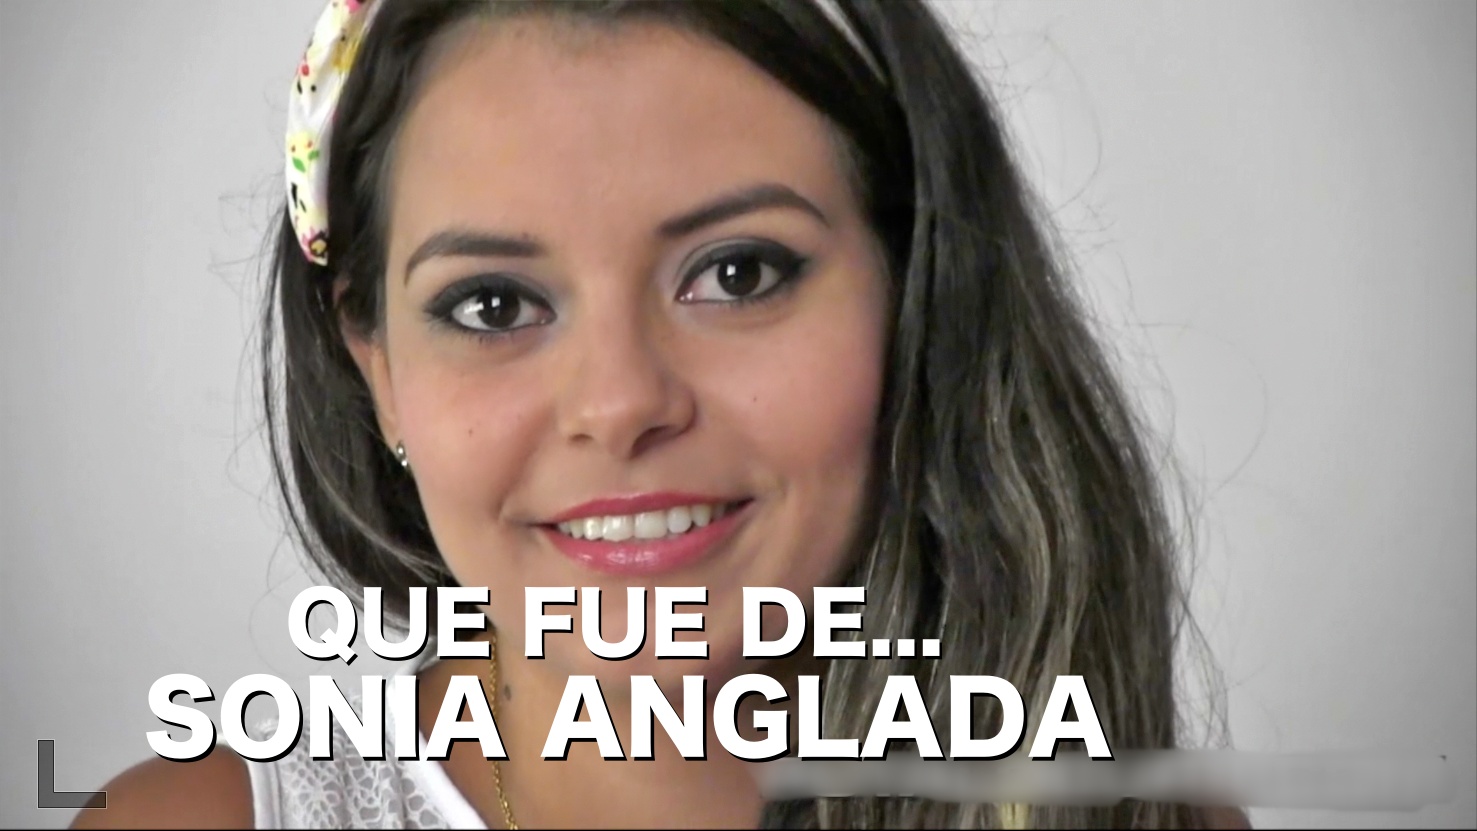 PutaLocura Sonia Anglada – Que fue de Sonia Anglada